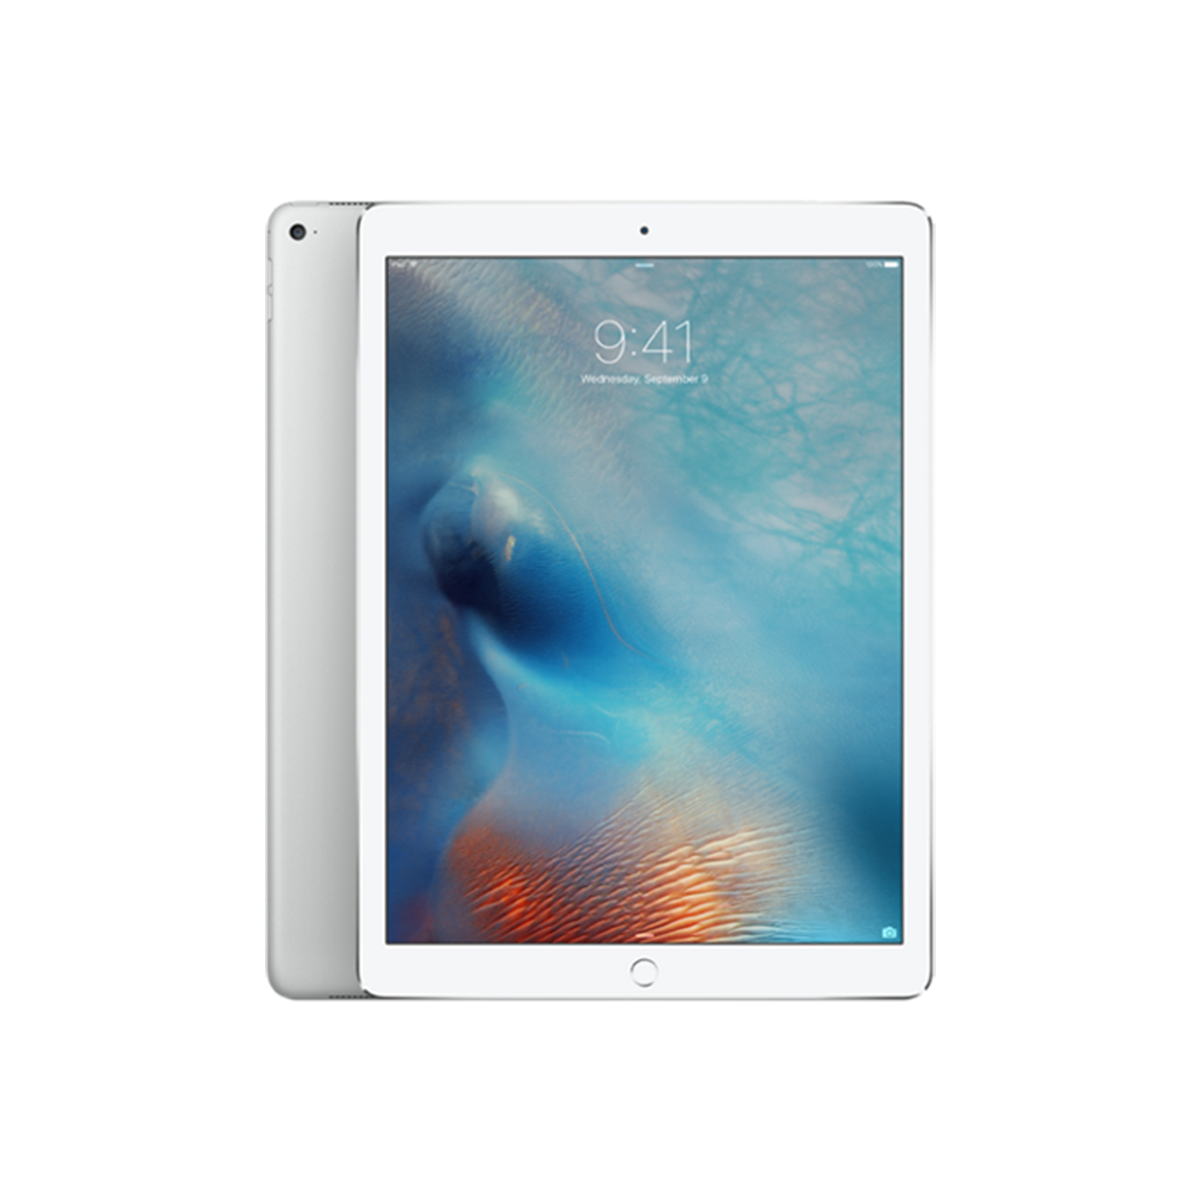  iPad Pro 12.9 inch WiFi 